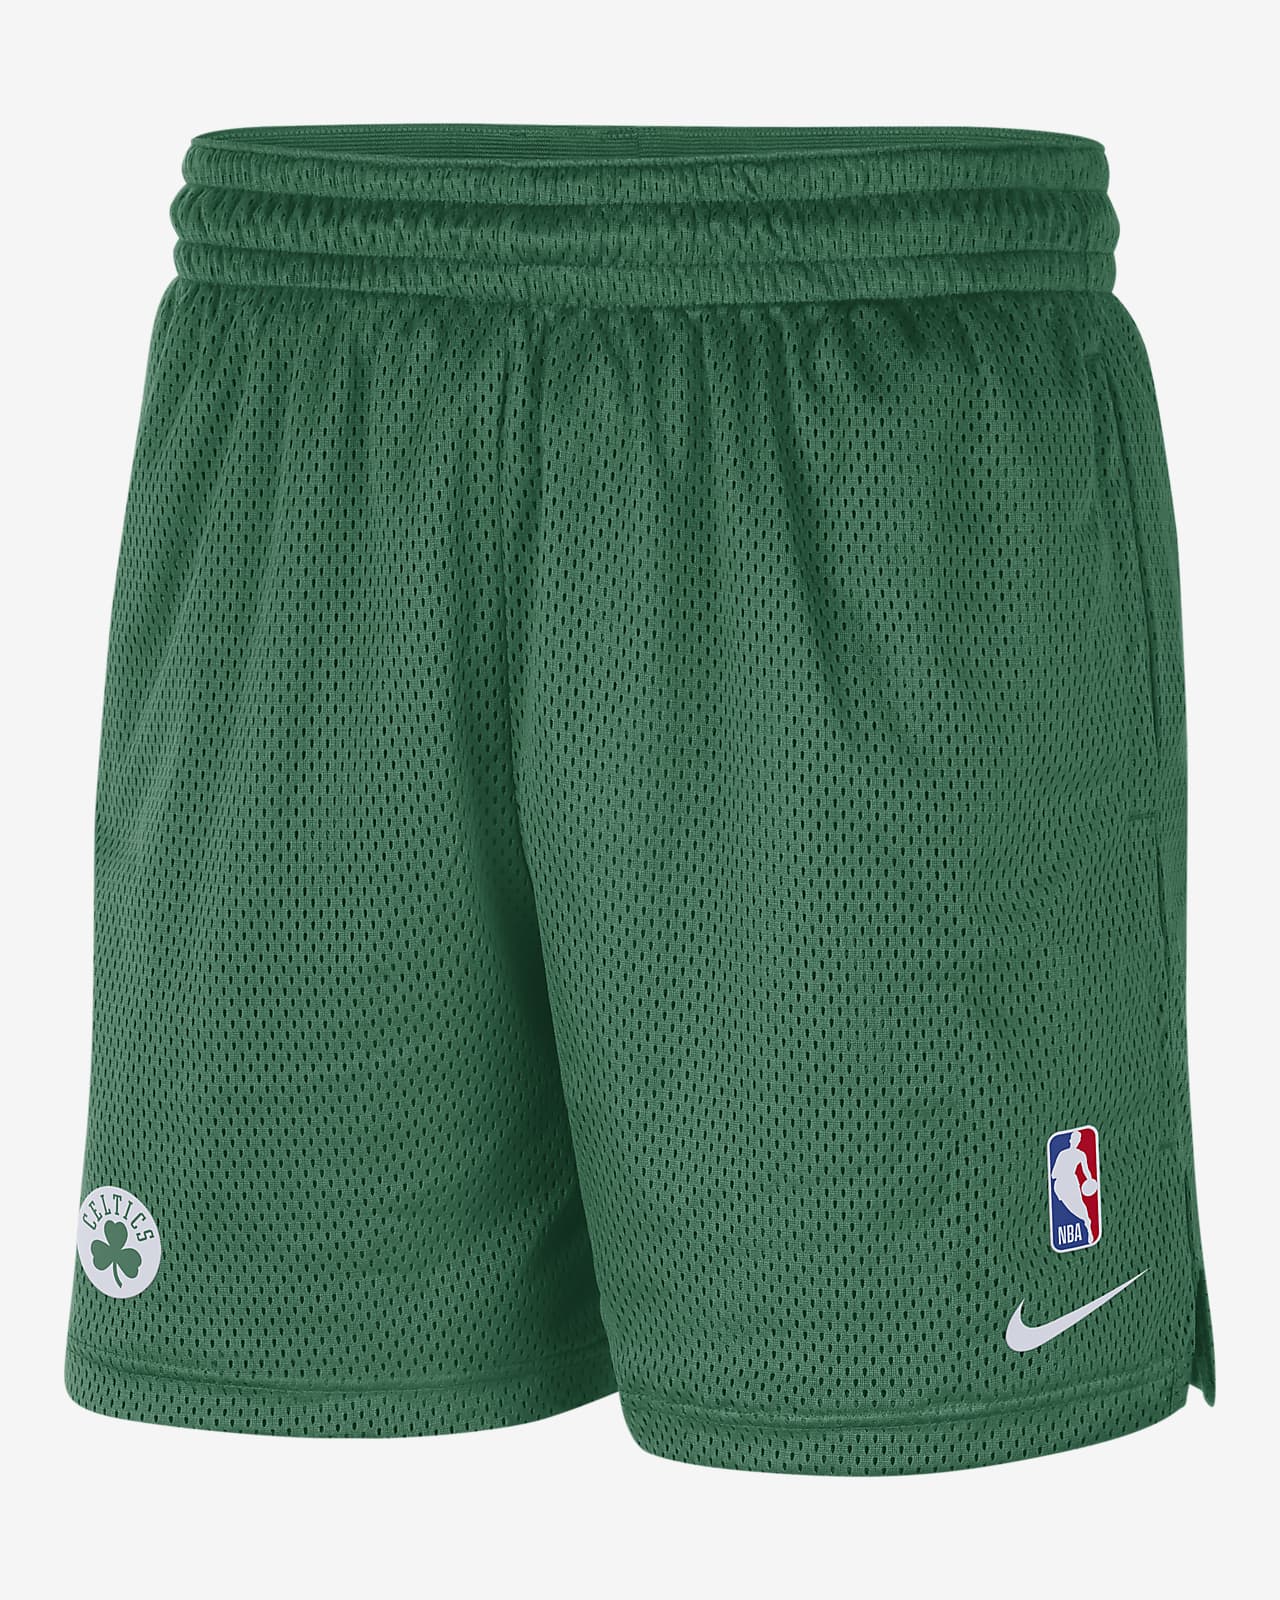 Boston Celtics Men's Nike NBA Shorts